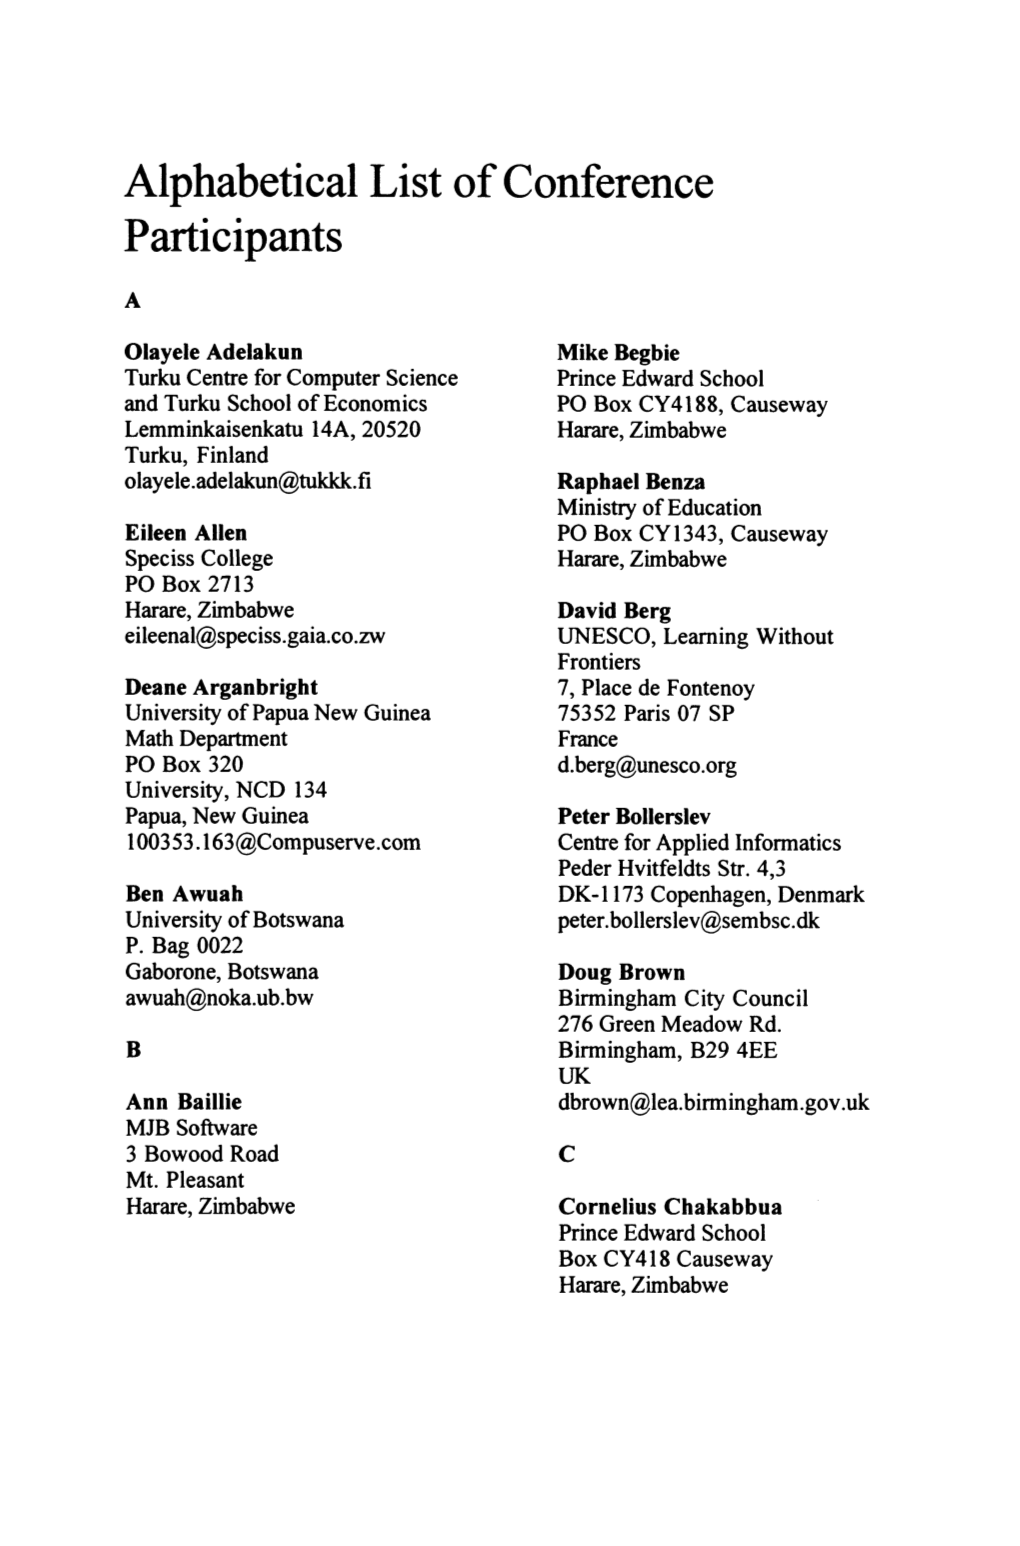 Alphabetical List of Conference Participants